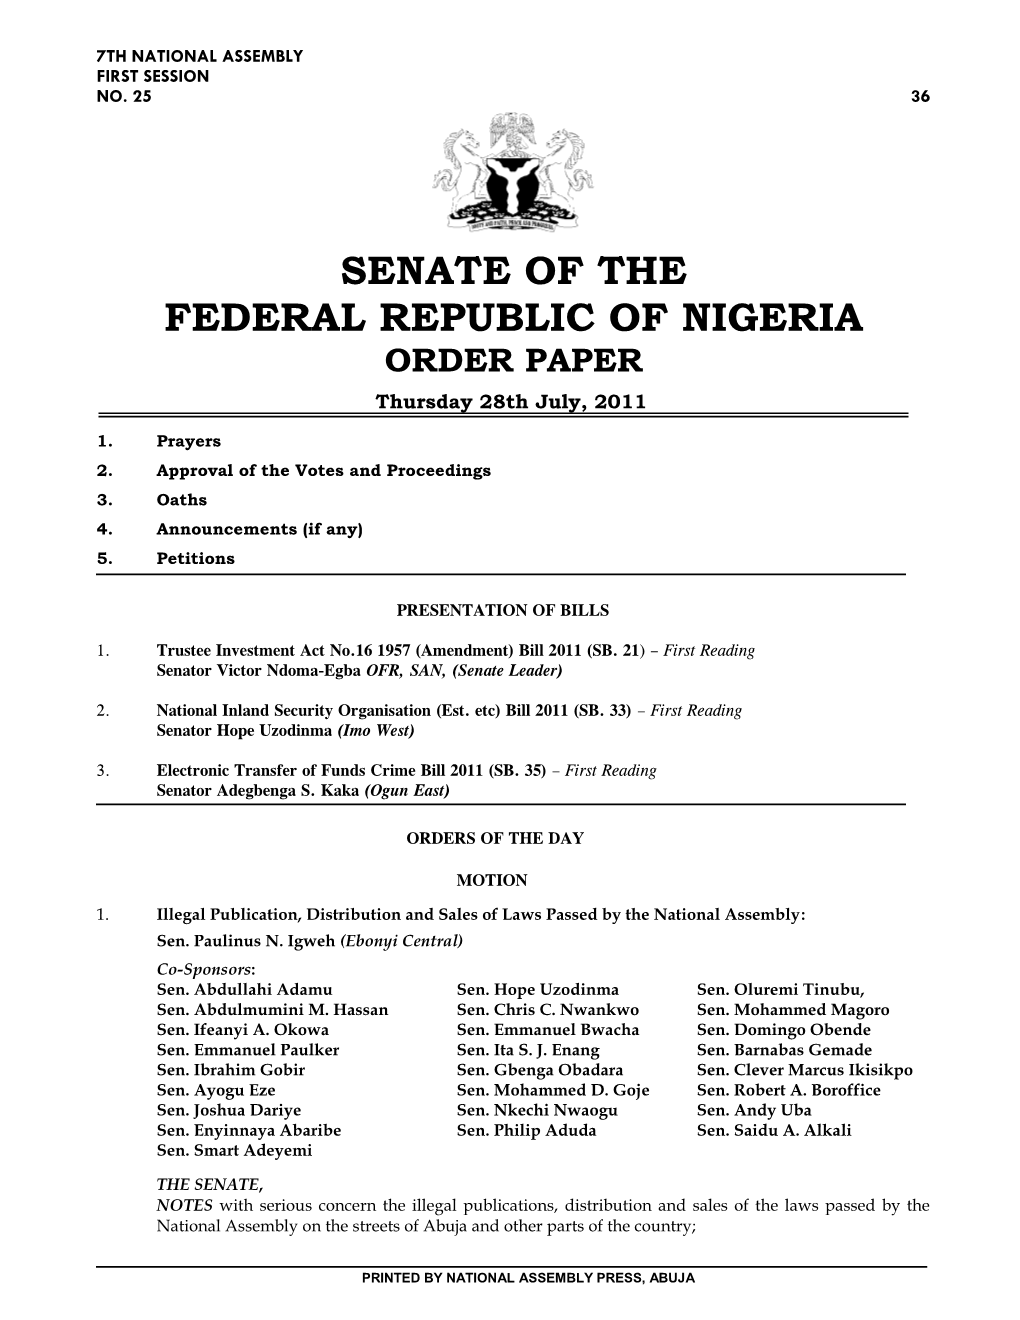 Senate of the Federal Republic of Nigeria Order Paper